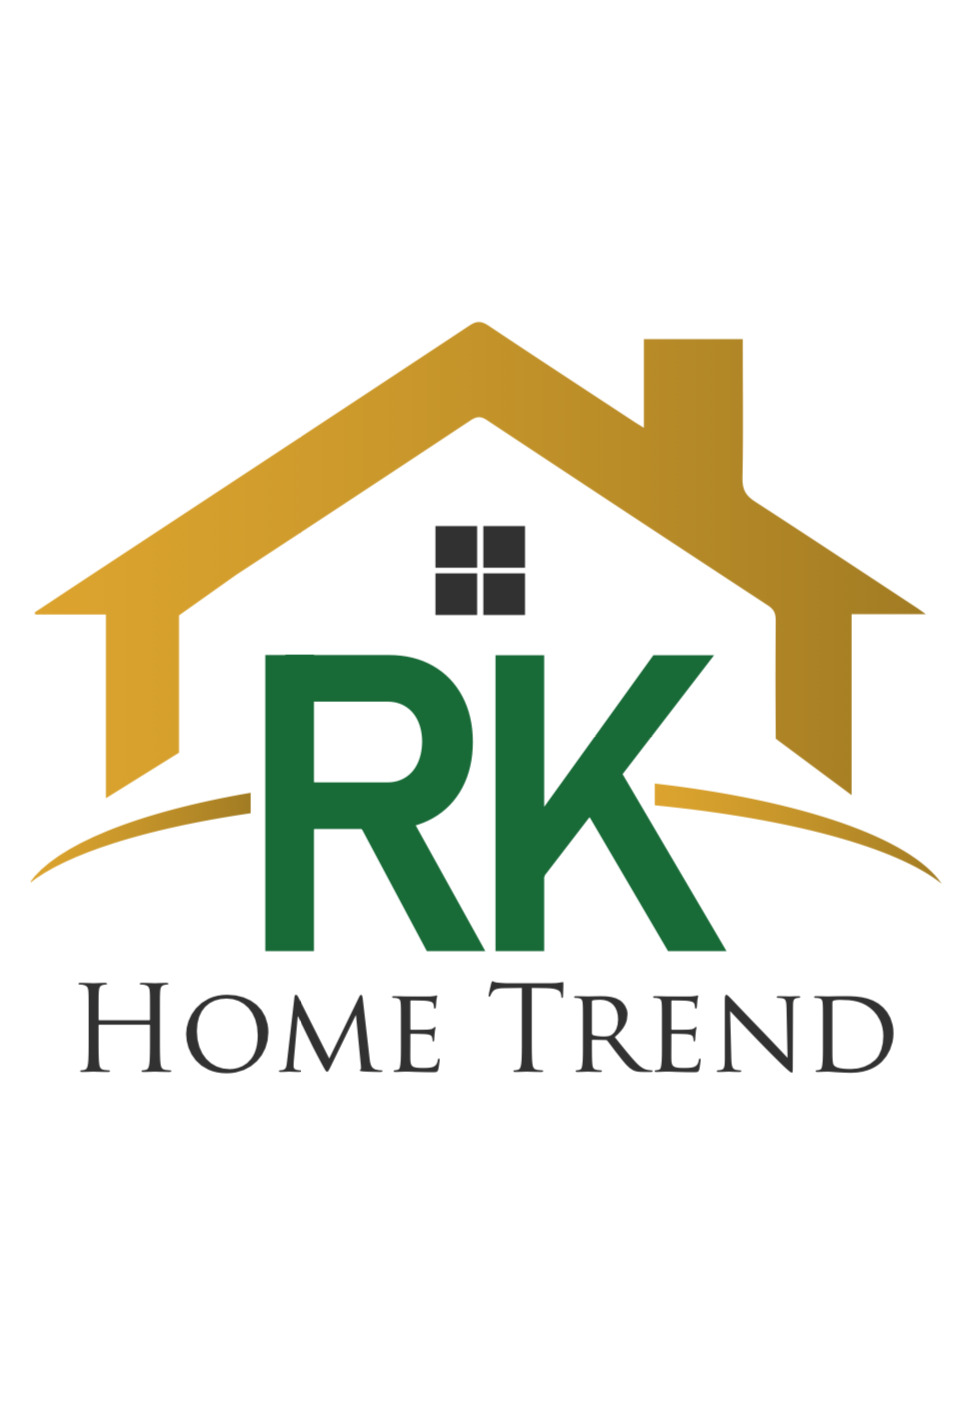 RK Hometrend Ltd.'s logo